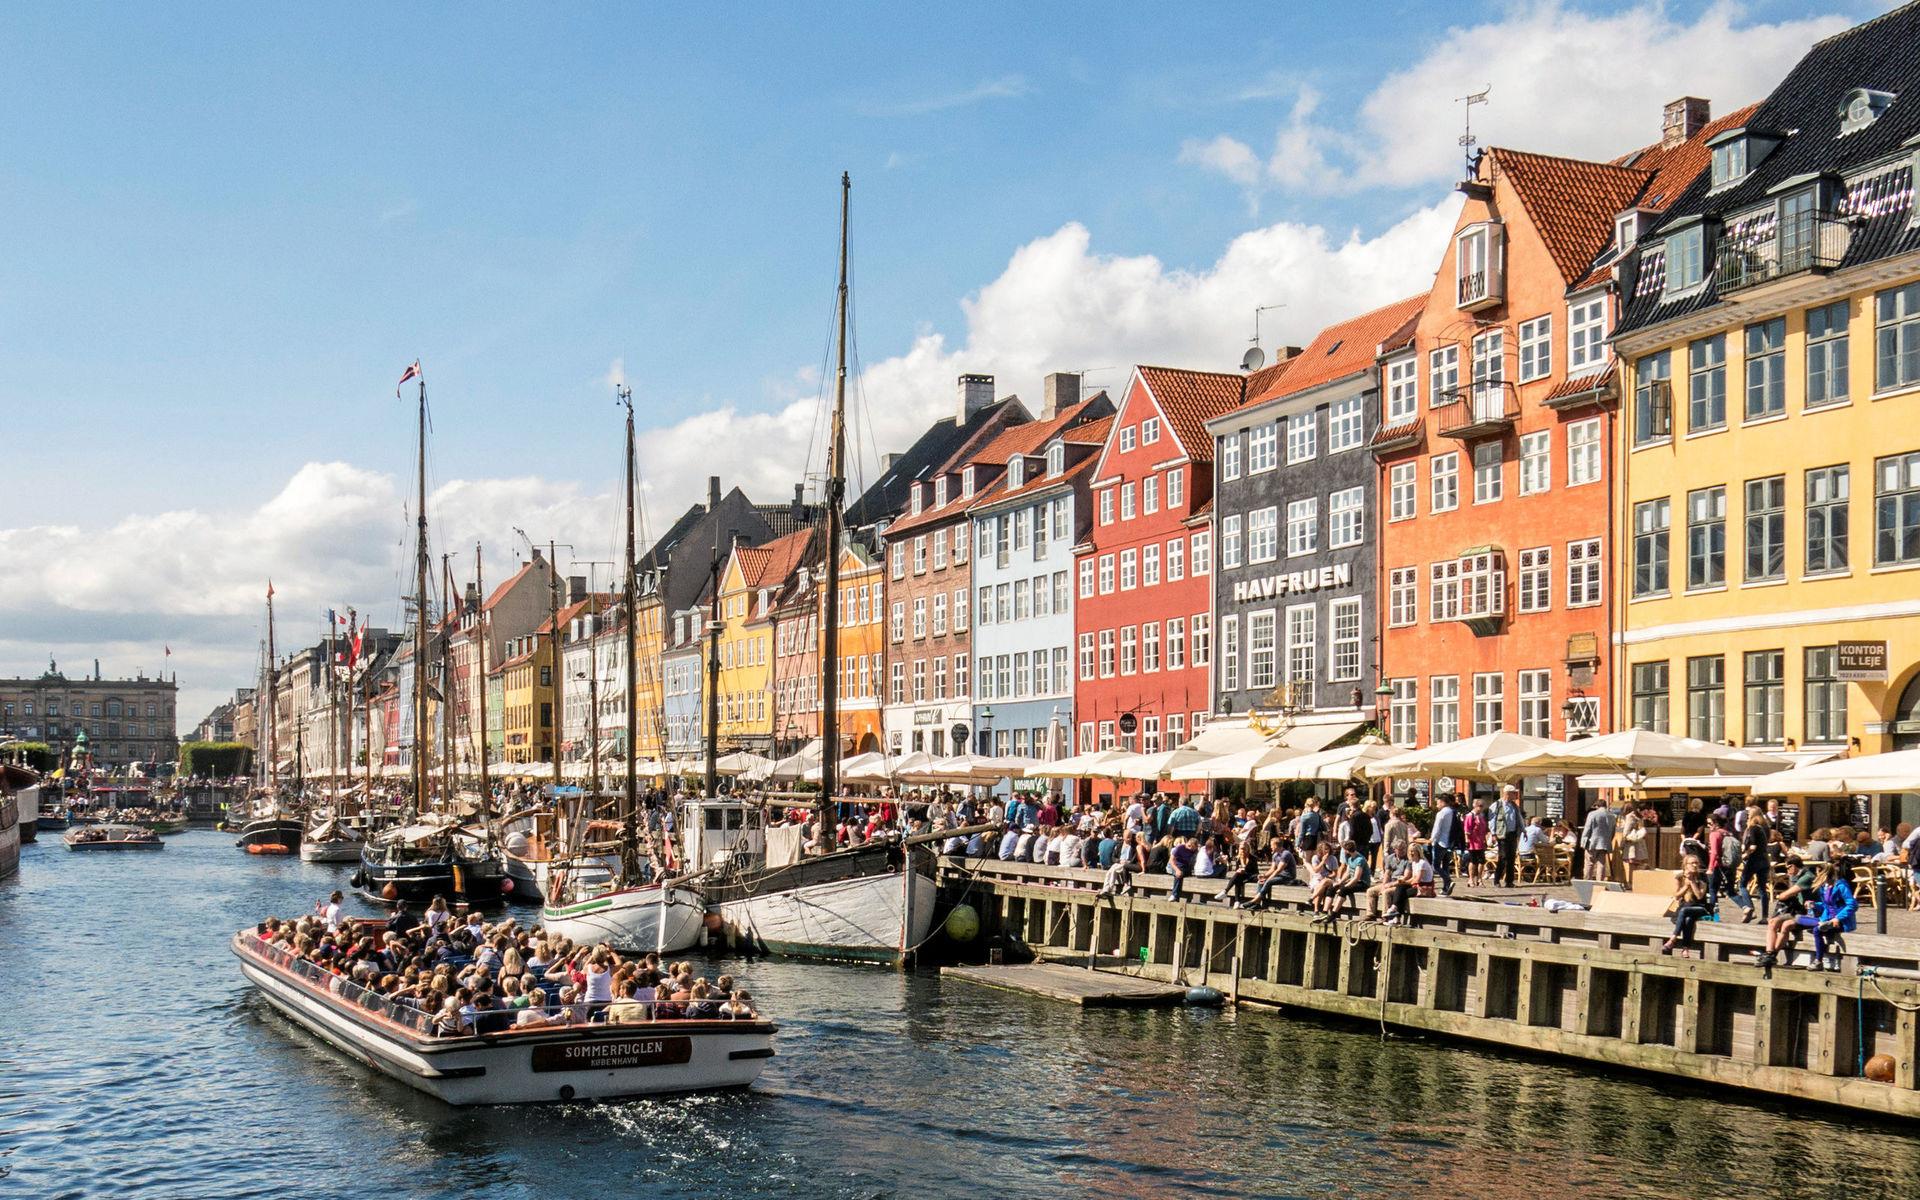 Danmark öppnade nyligen för bland andra västsvenskar. Men det är många villkor som måste uppfyllas innan du kan semestra i grannlandet.